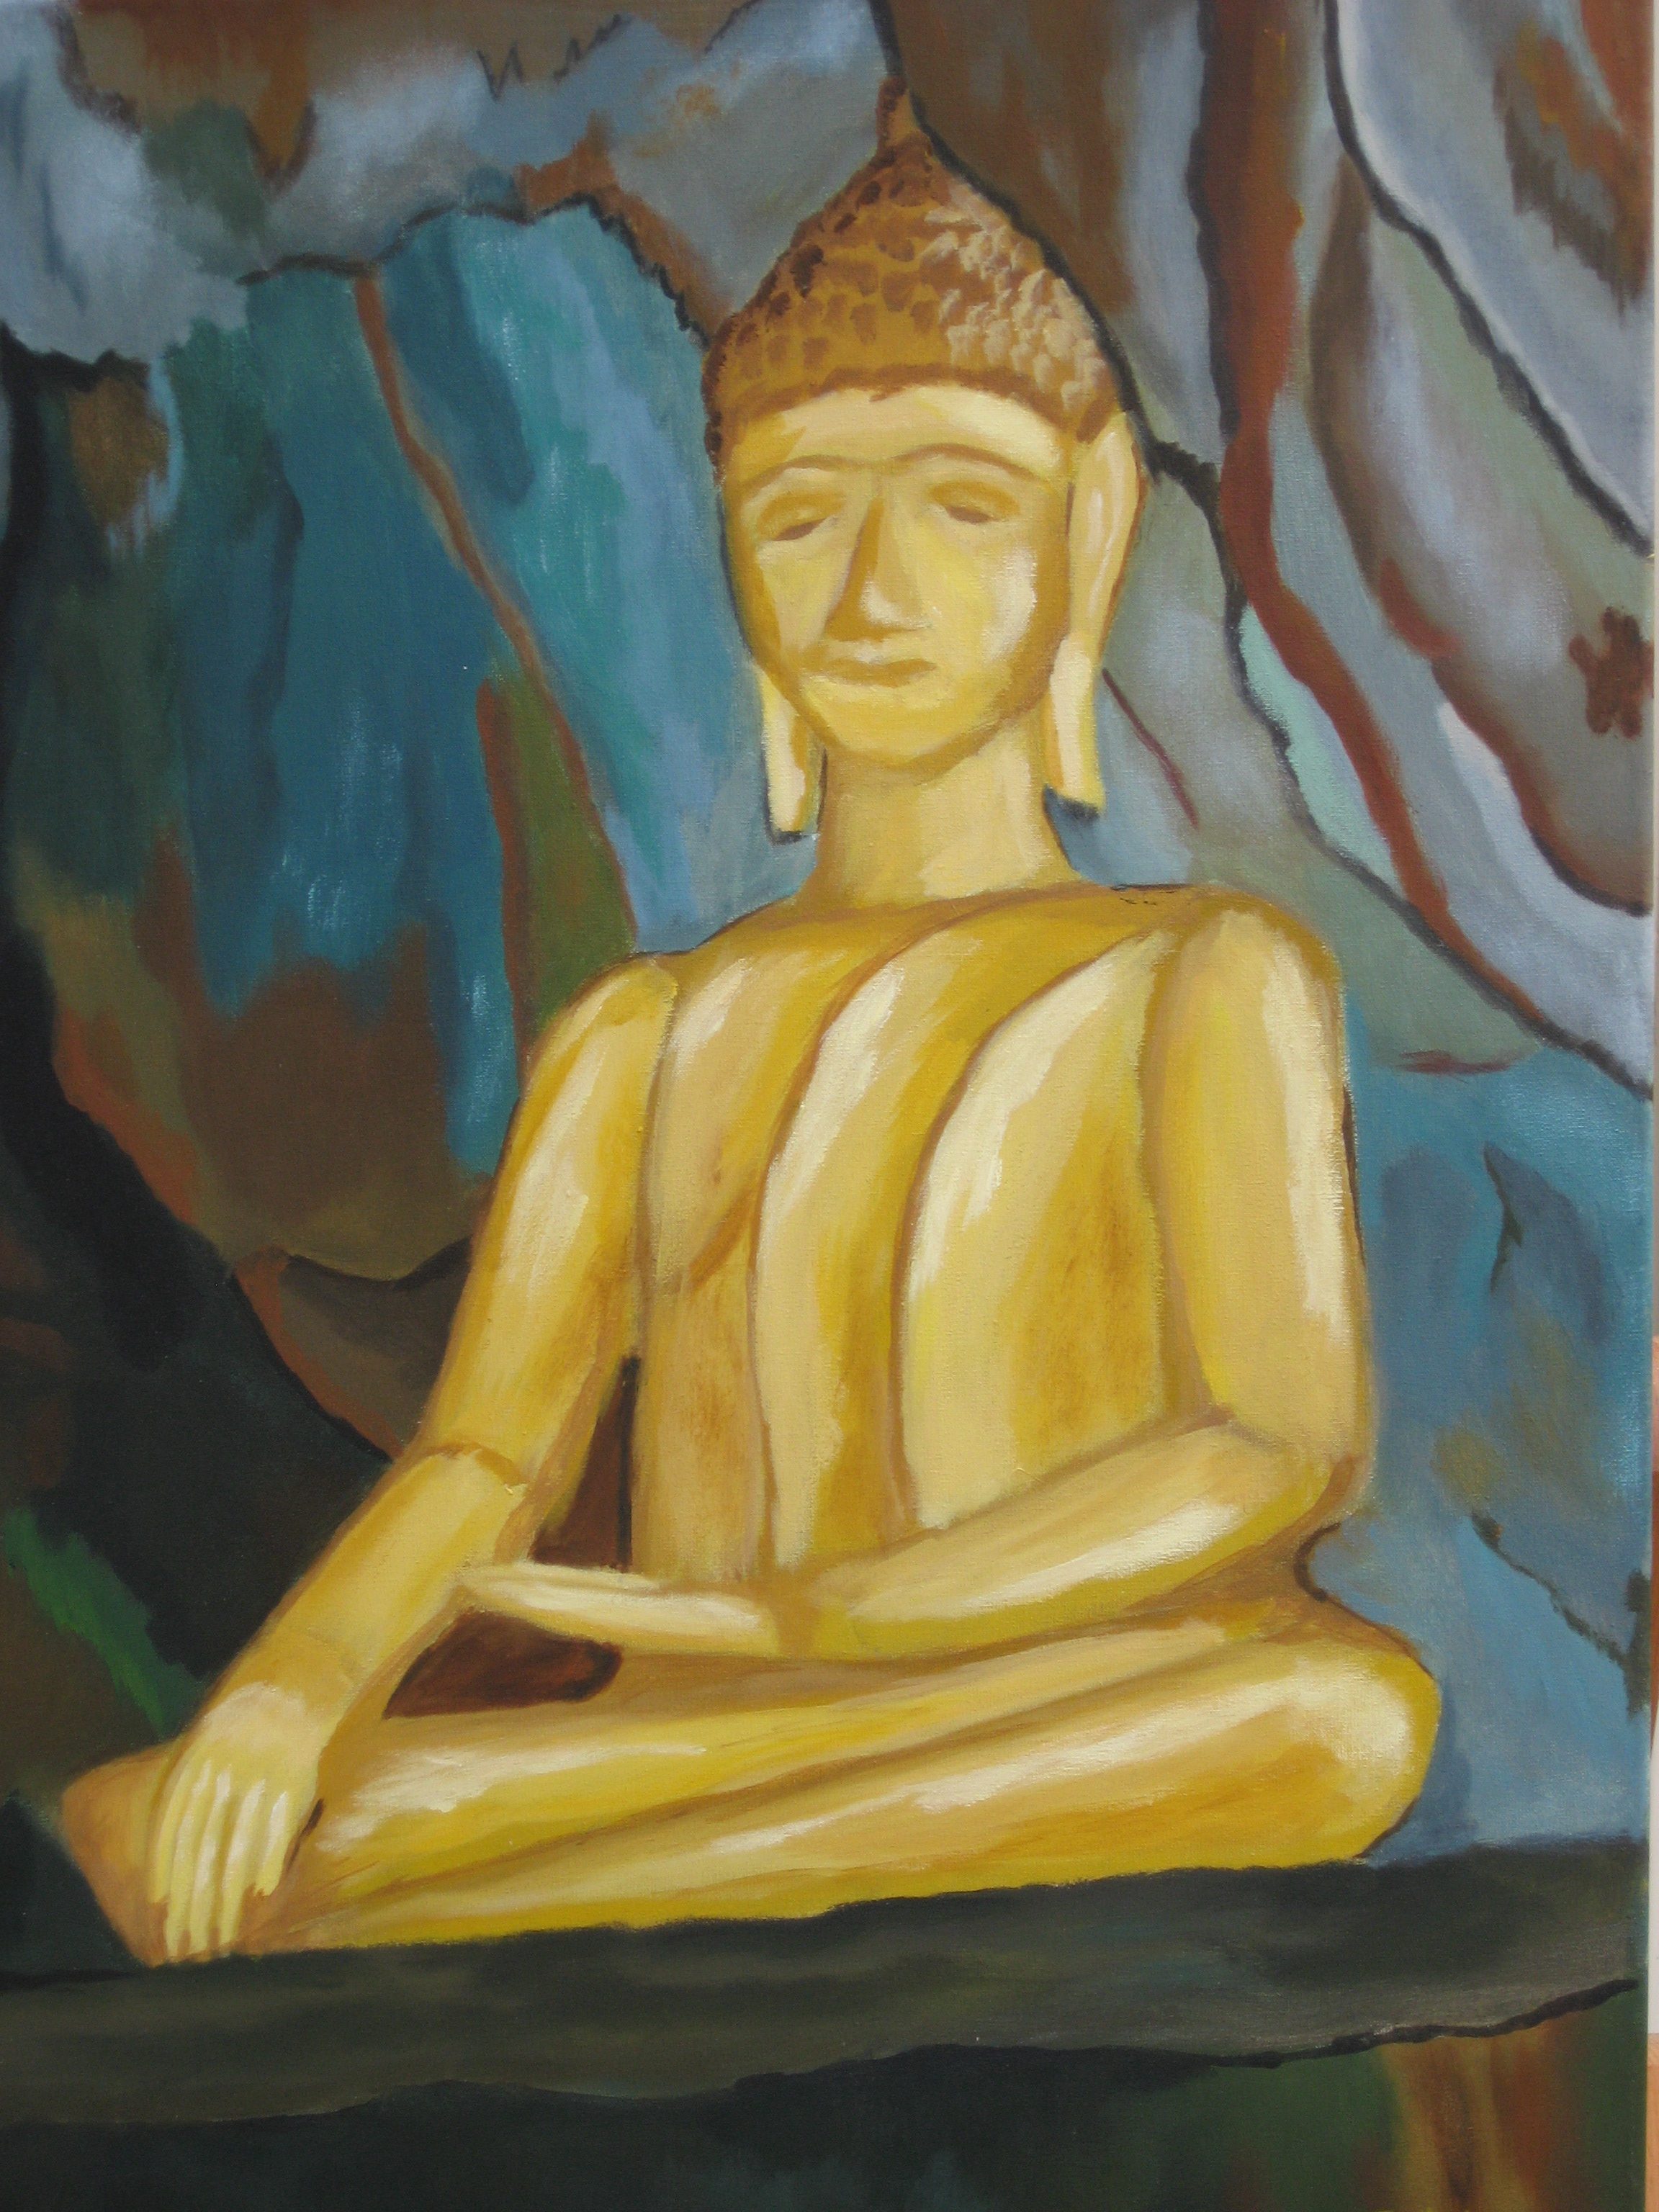 Gouden Boeddha